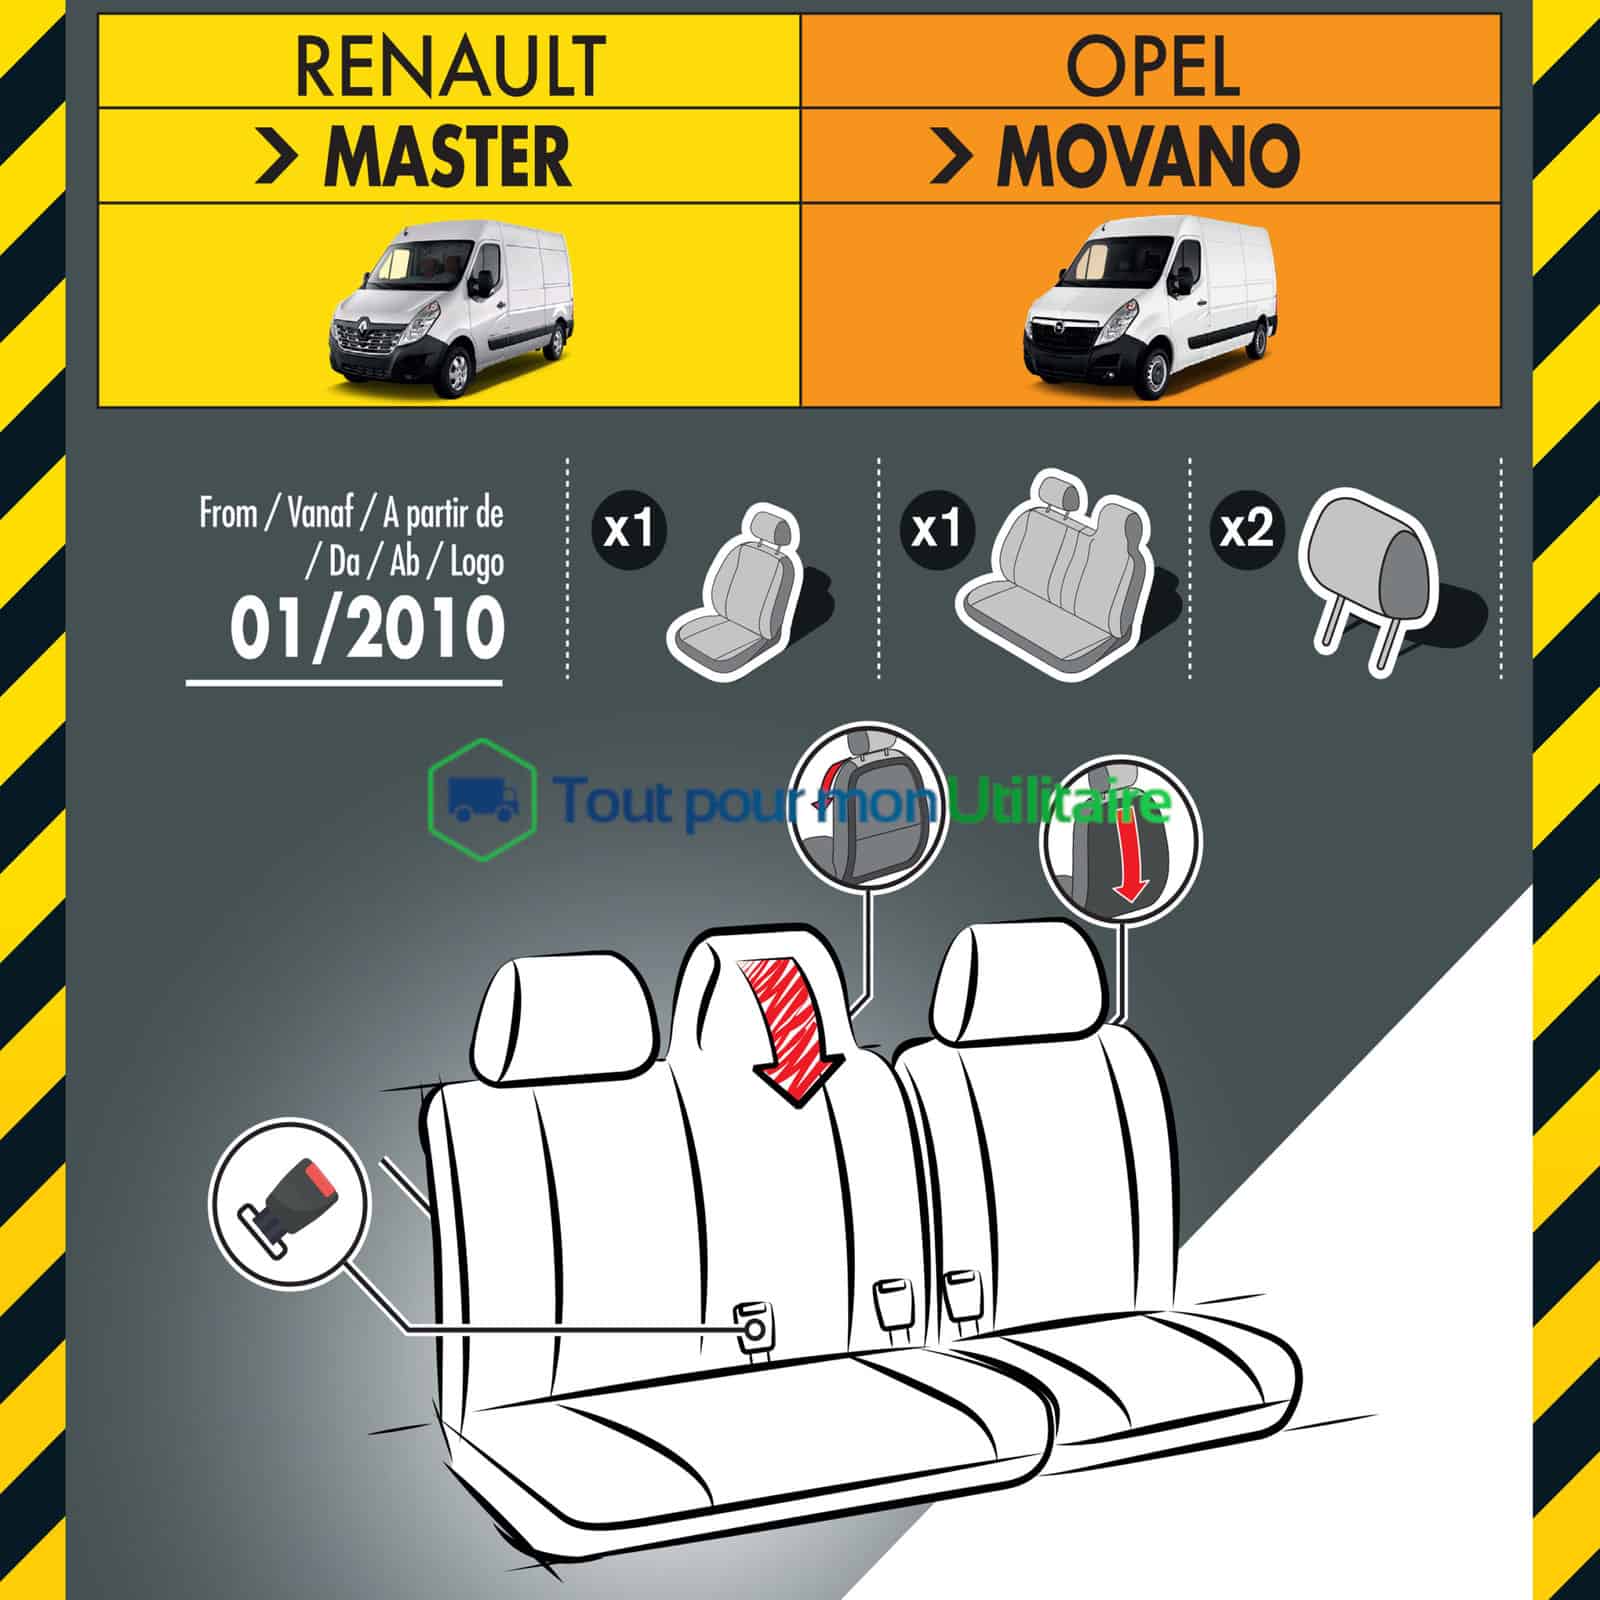 Housses en Jacquard/Simili Cuir pour RENAULT Trafic 2019+ - 1 siège  conducteur + 1 banquette 2 places (compatible airbag)